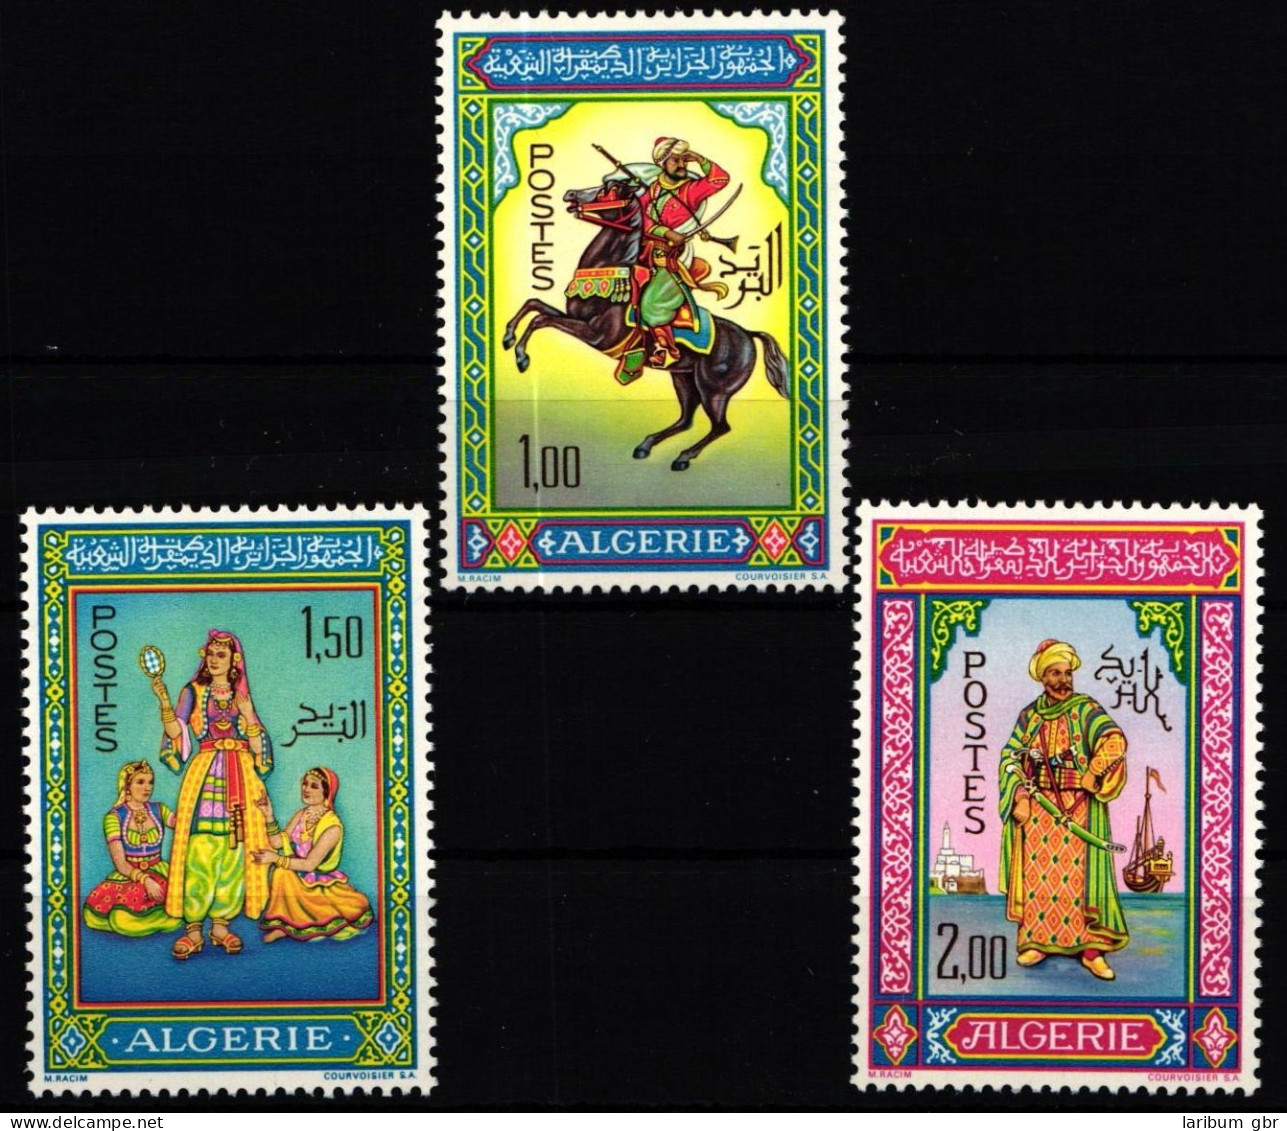 Algerien 464-466 Postfrisch #KX159 - Algerien (1962-...)